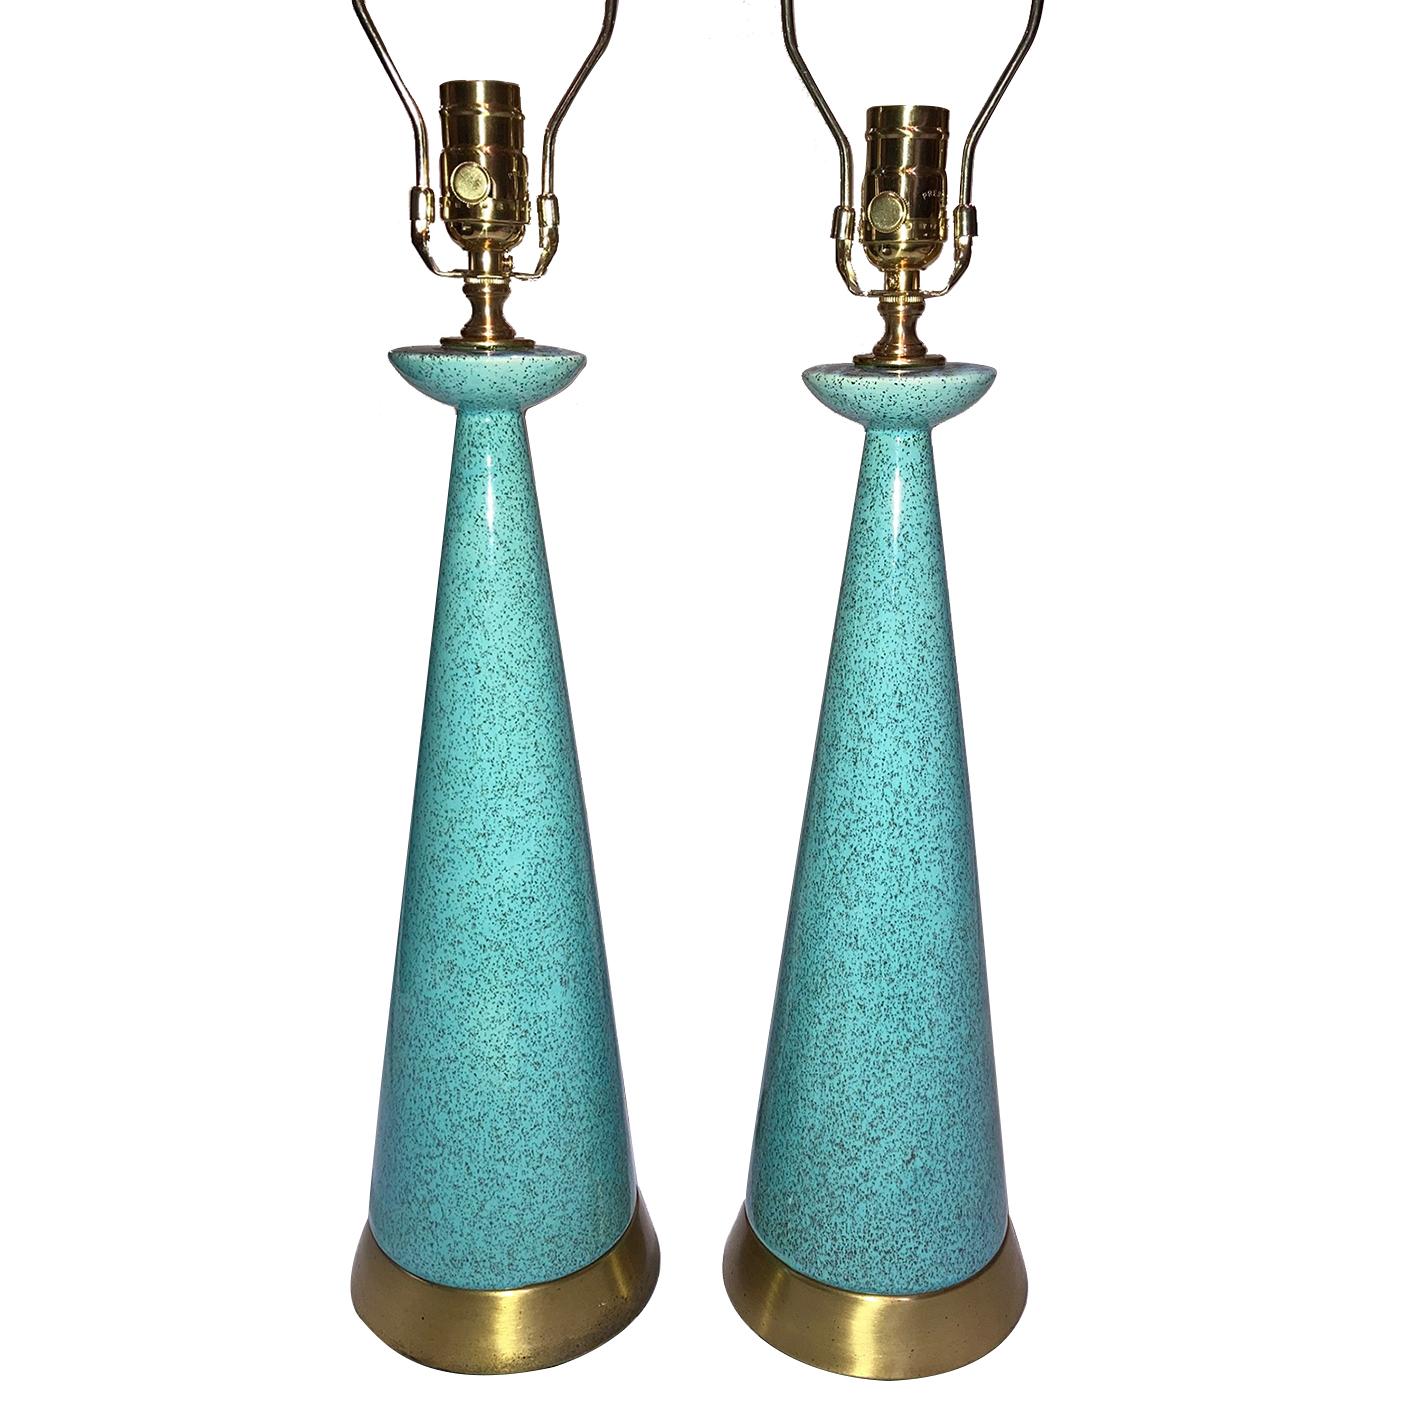 Zwei italienische Tischlampen aus glasierter blauer Keramik mit vergoldeten Messingsockeln aus den 1960er Jahren.

Abmessungen:
Höhe des Gehäuses: 19